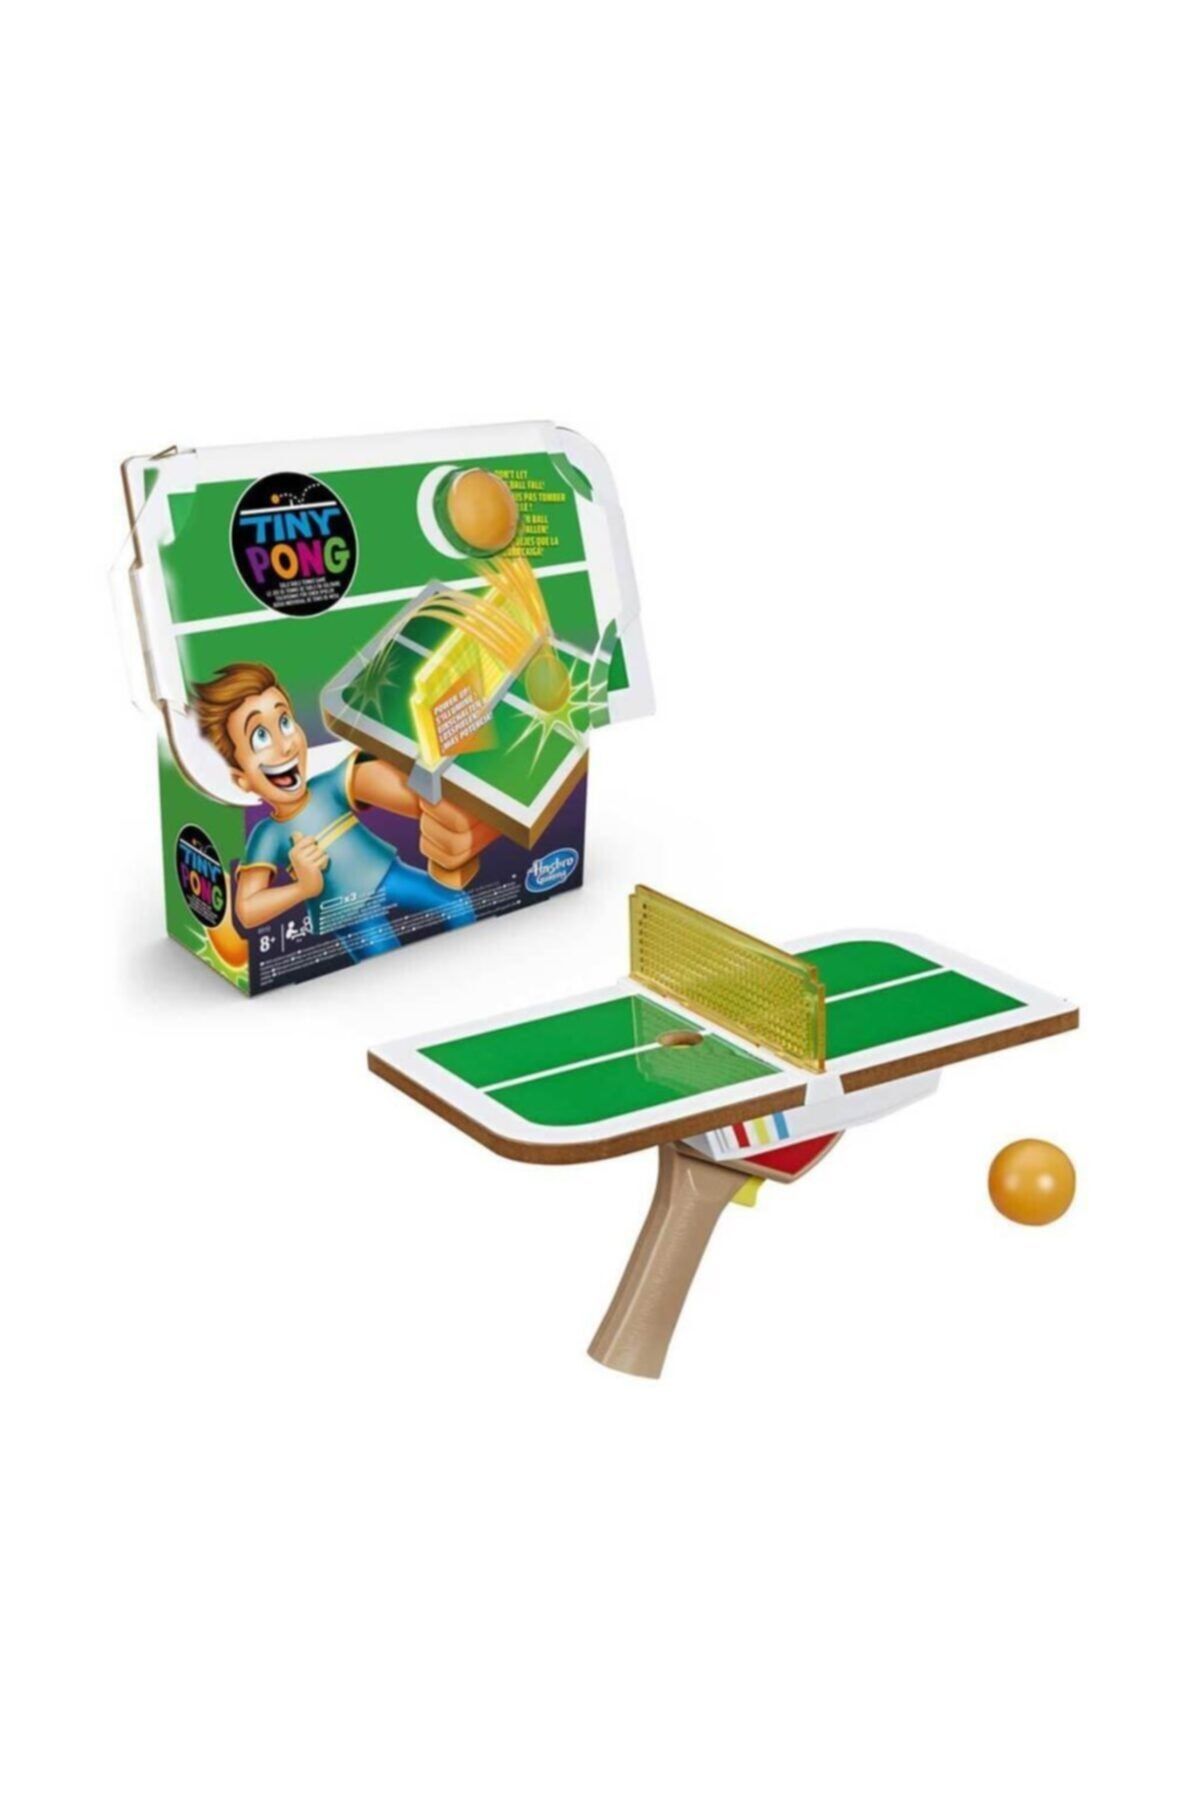 Hasbro Tıny Pong  Kutu Oyunları